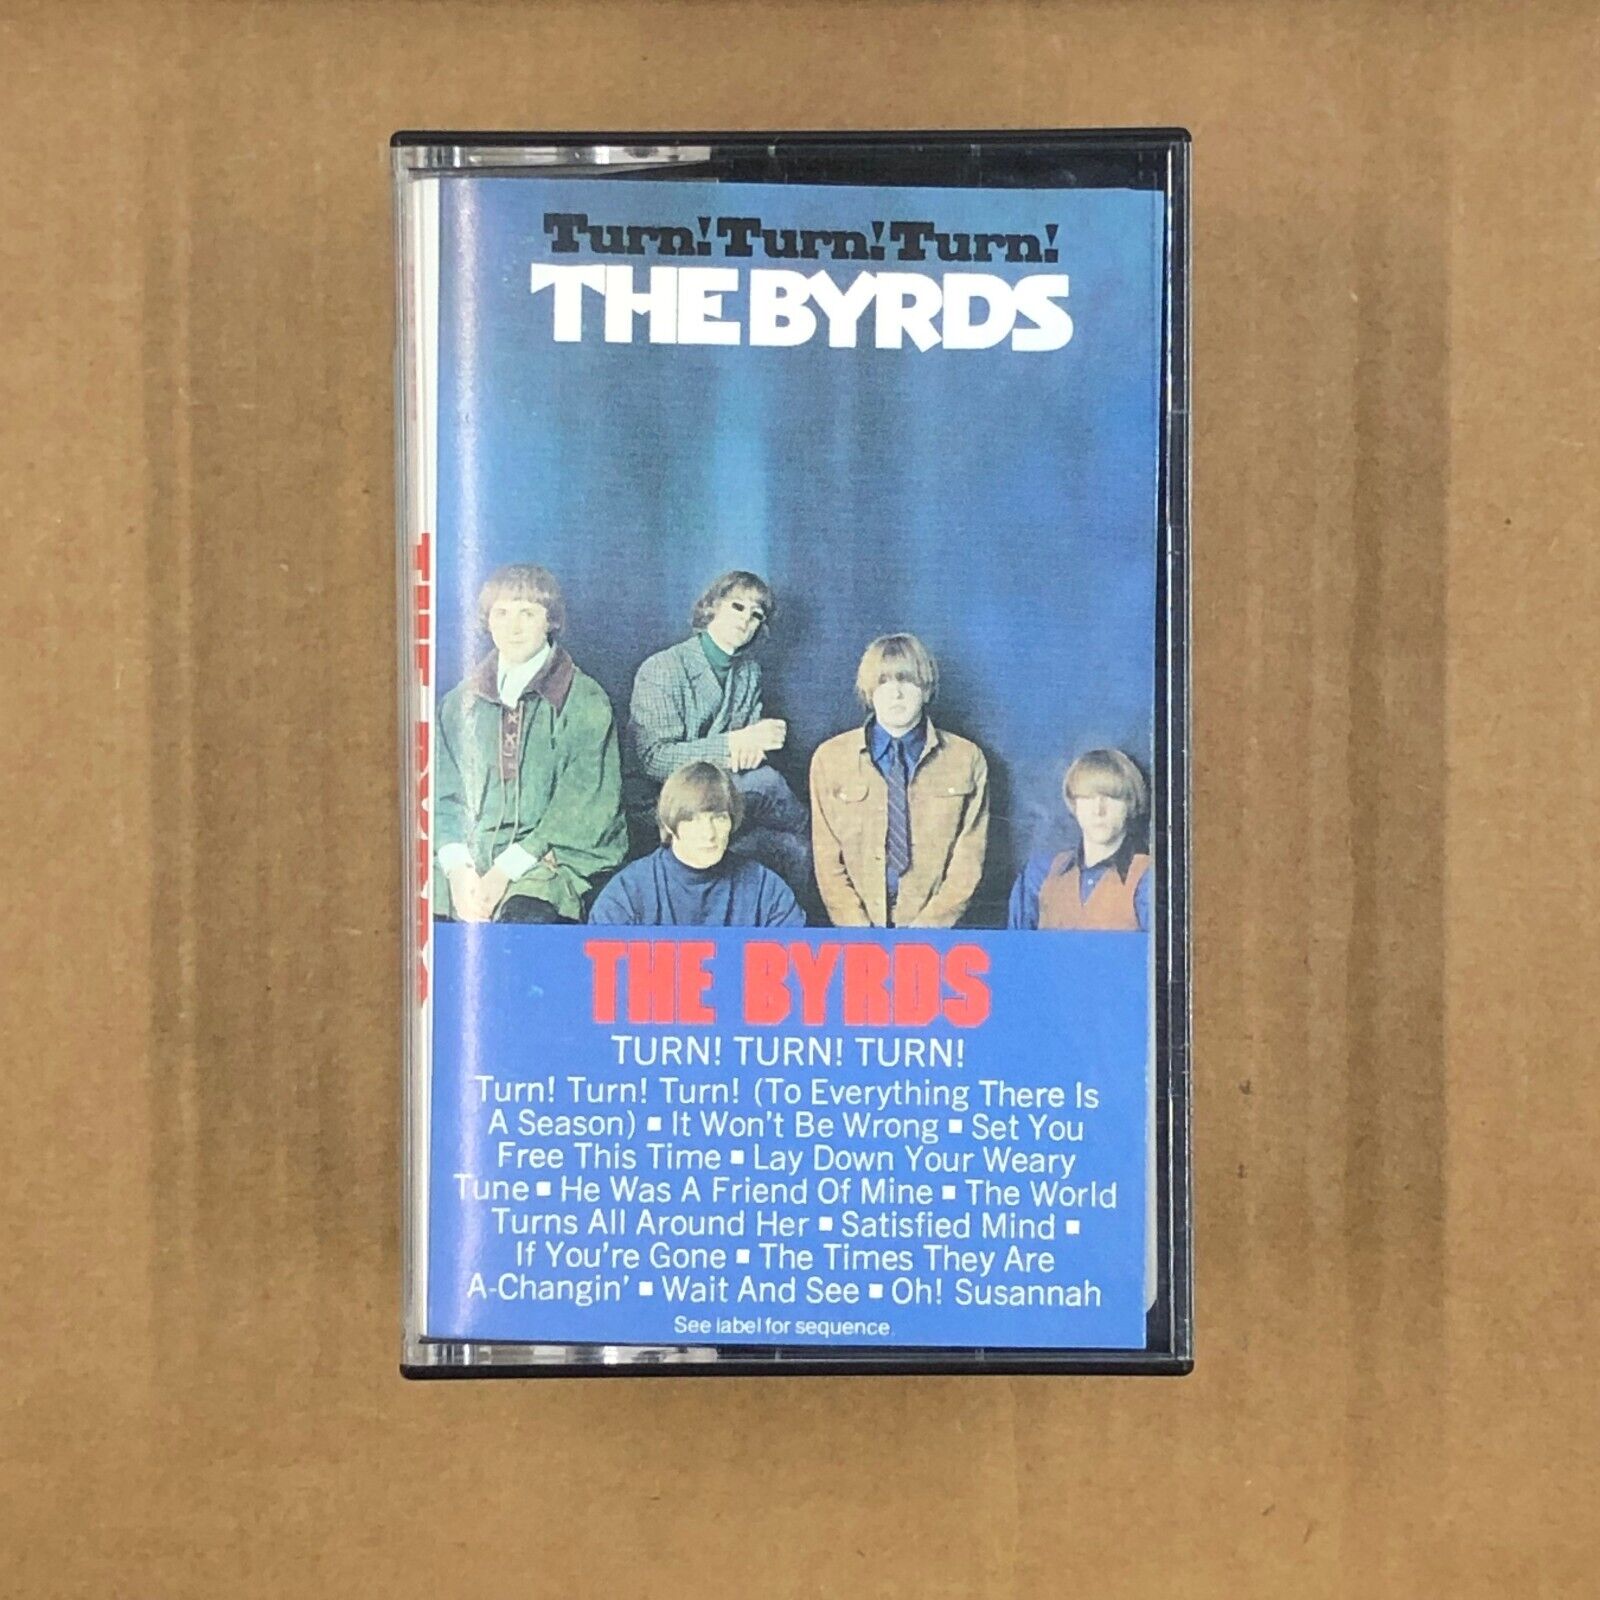 Cassette Tape:The Byrds - Turn! Turn! Turn!:BUILD UR OWN LOT CASSETTE TAPES ROCK Led Zeppelin ELO Beatles Eagles 60s 70s 80s